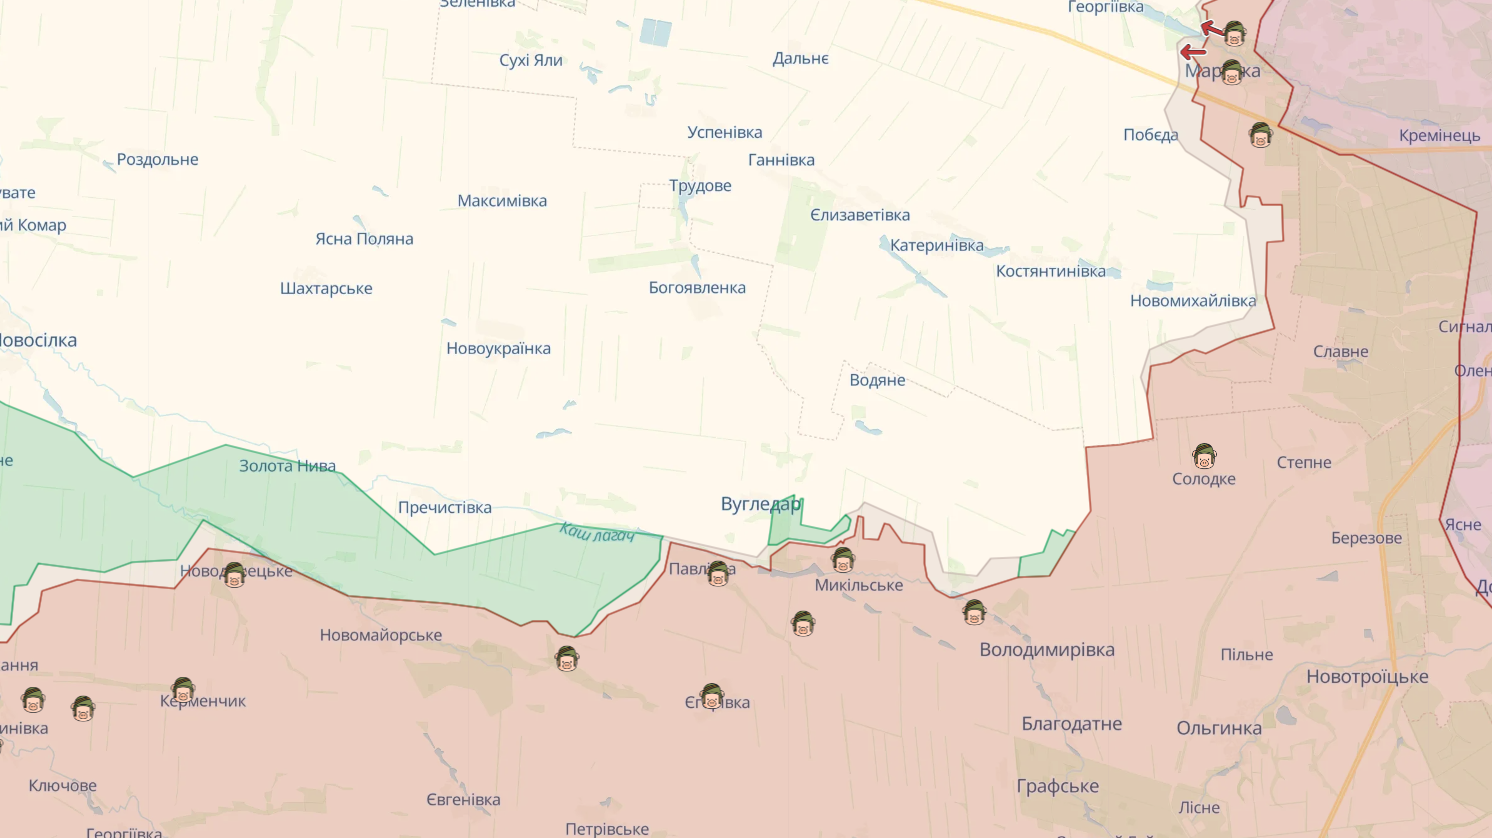 Сили оборони надалі утримують зайняті позиції на лівобережжі Дніпра, за добу на фронті відбулося 97 бойових зіткнень – Генштаб